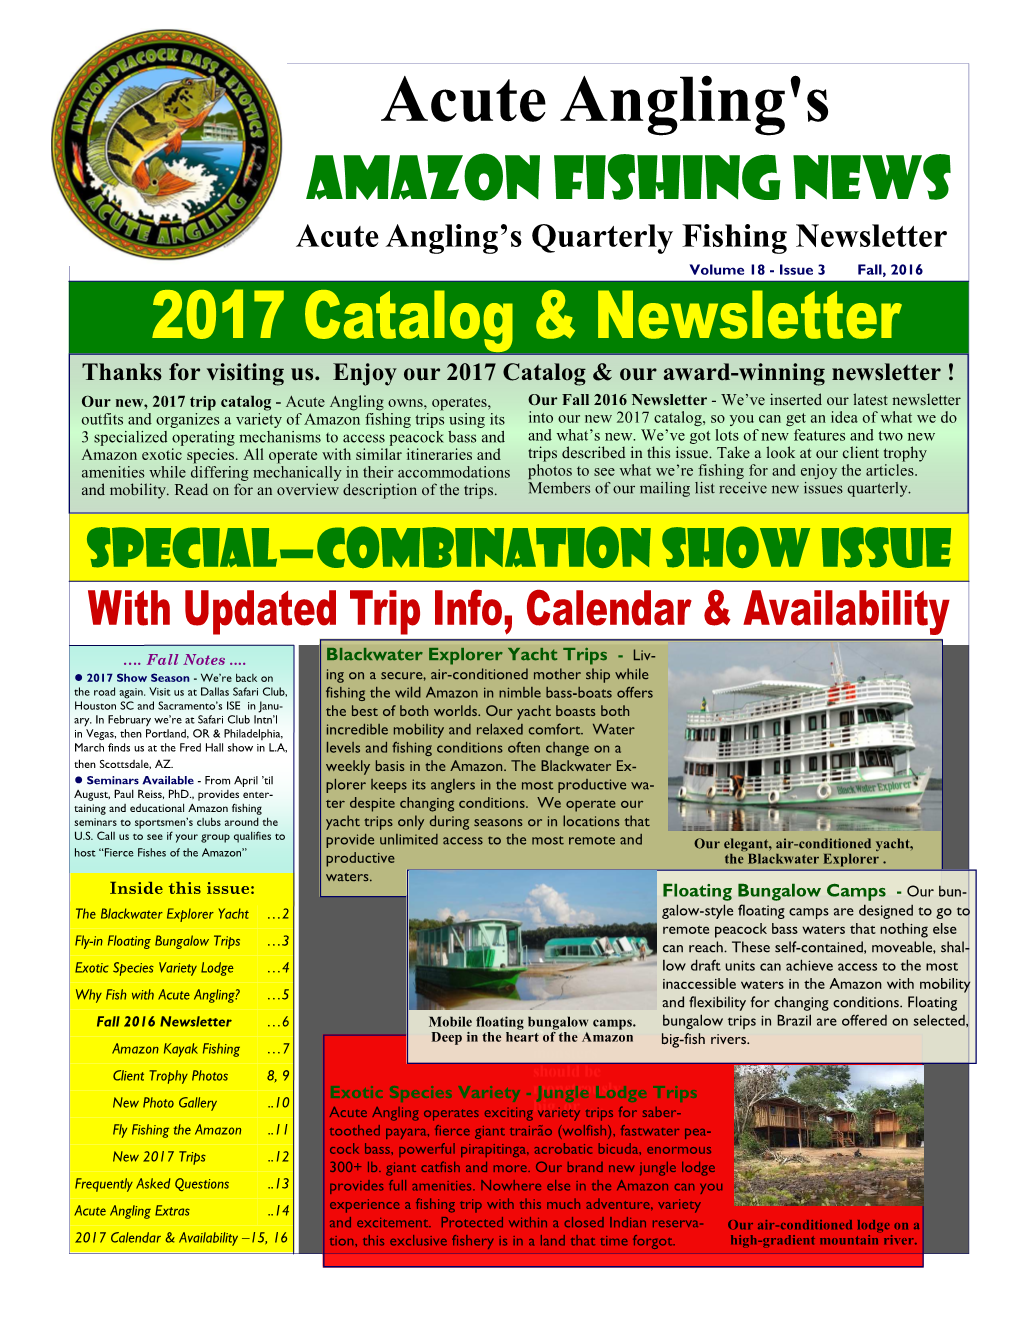 Amazon Fishing News